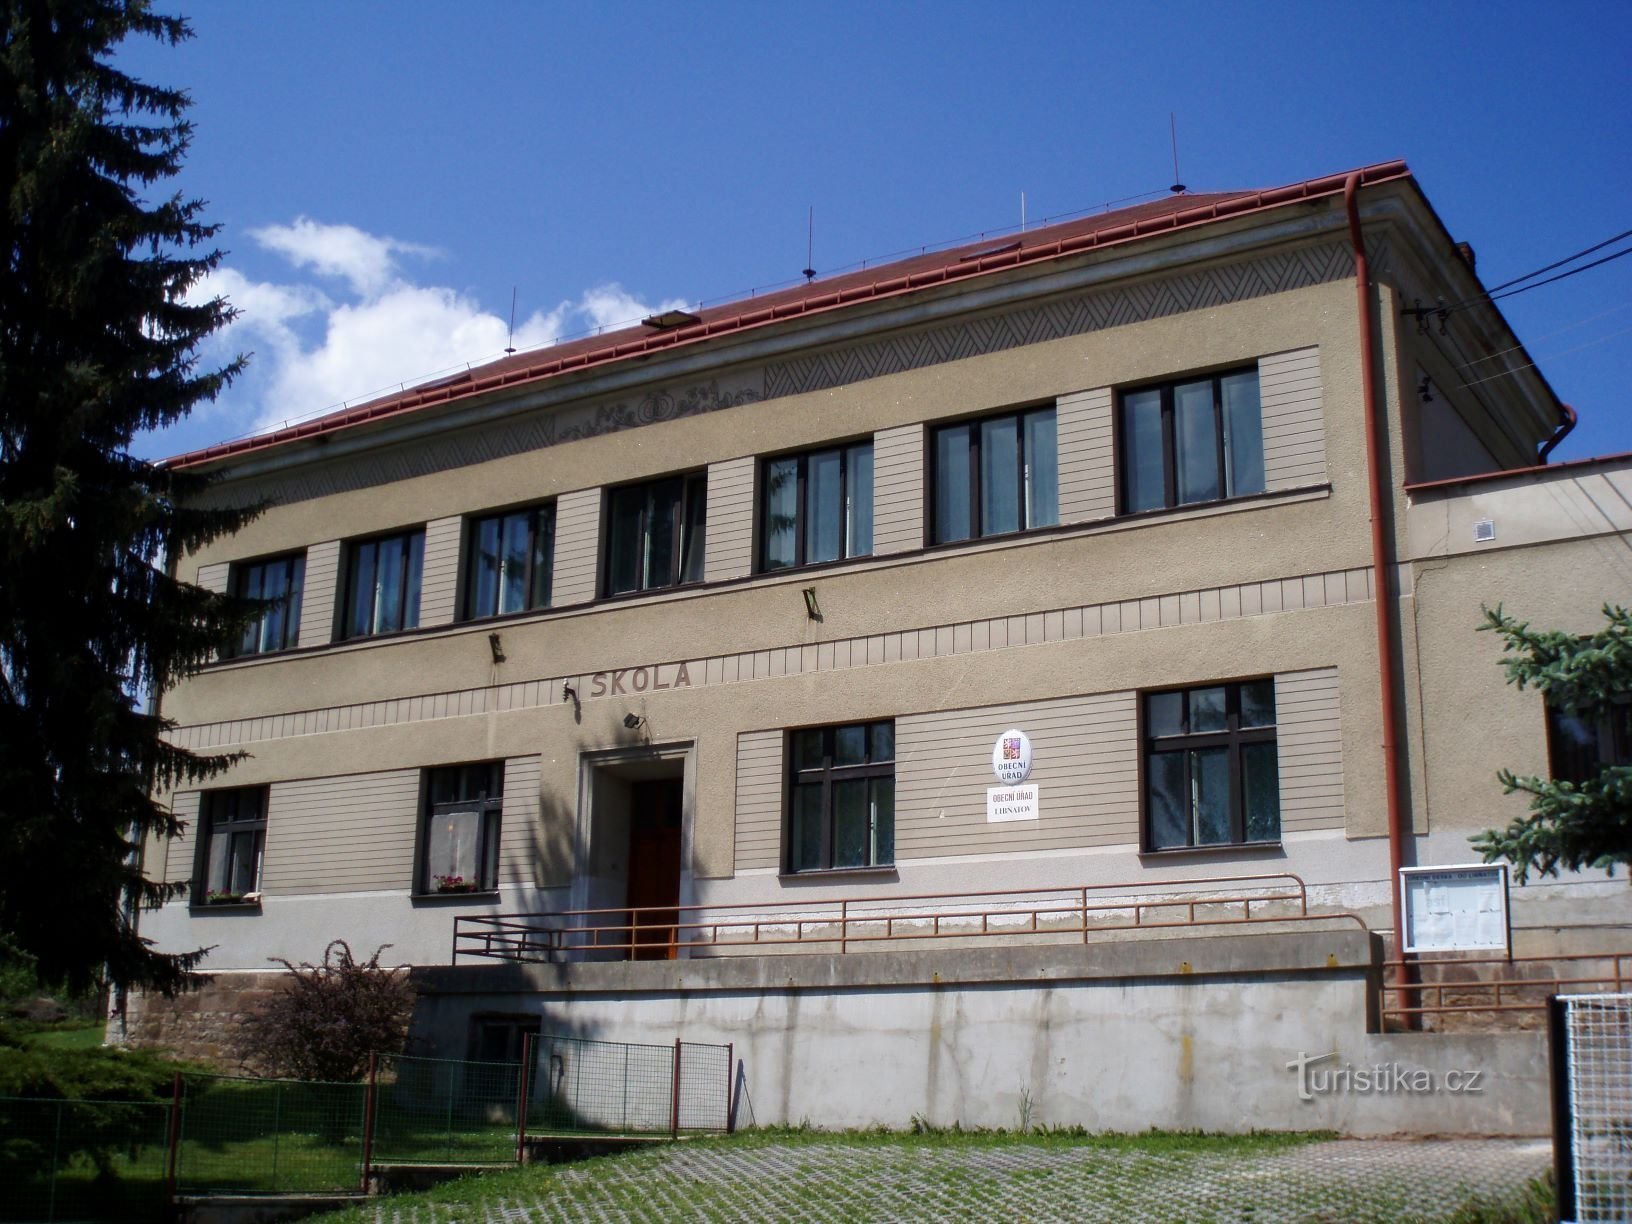 現在の市役所の元の外観 (Libňatov、12.5.2009 年 XNUMX 月 XNUMX 日)